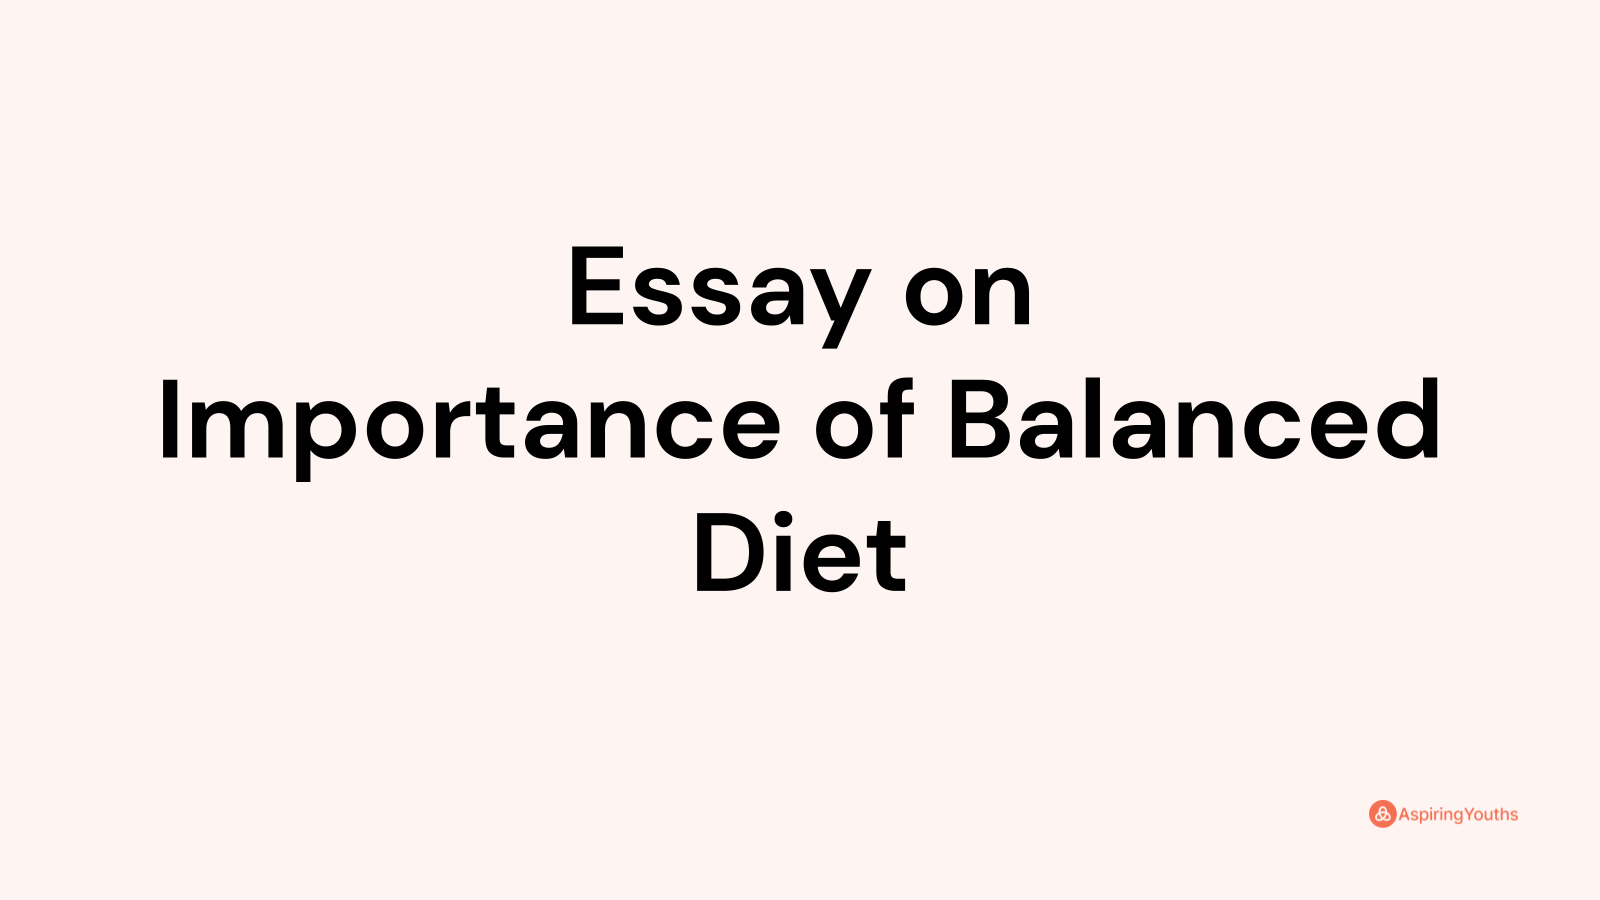 essay on balanced diet 250 words